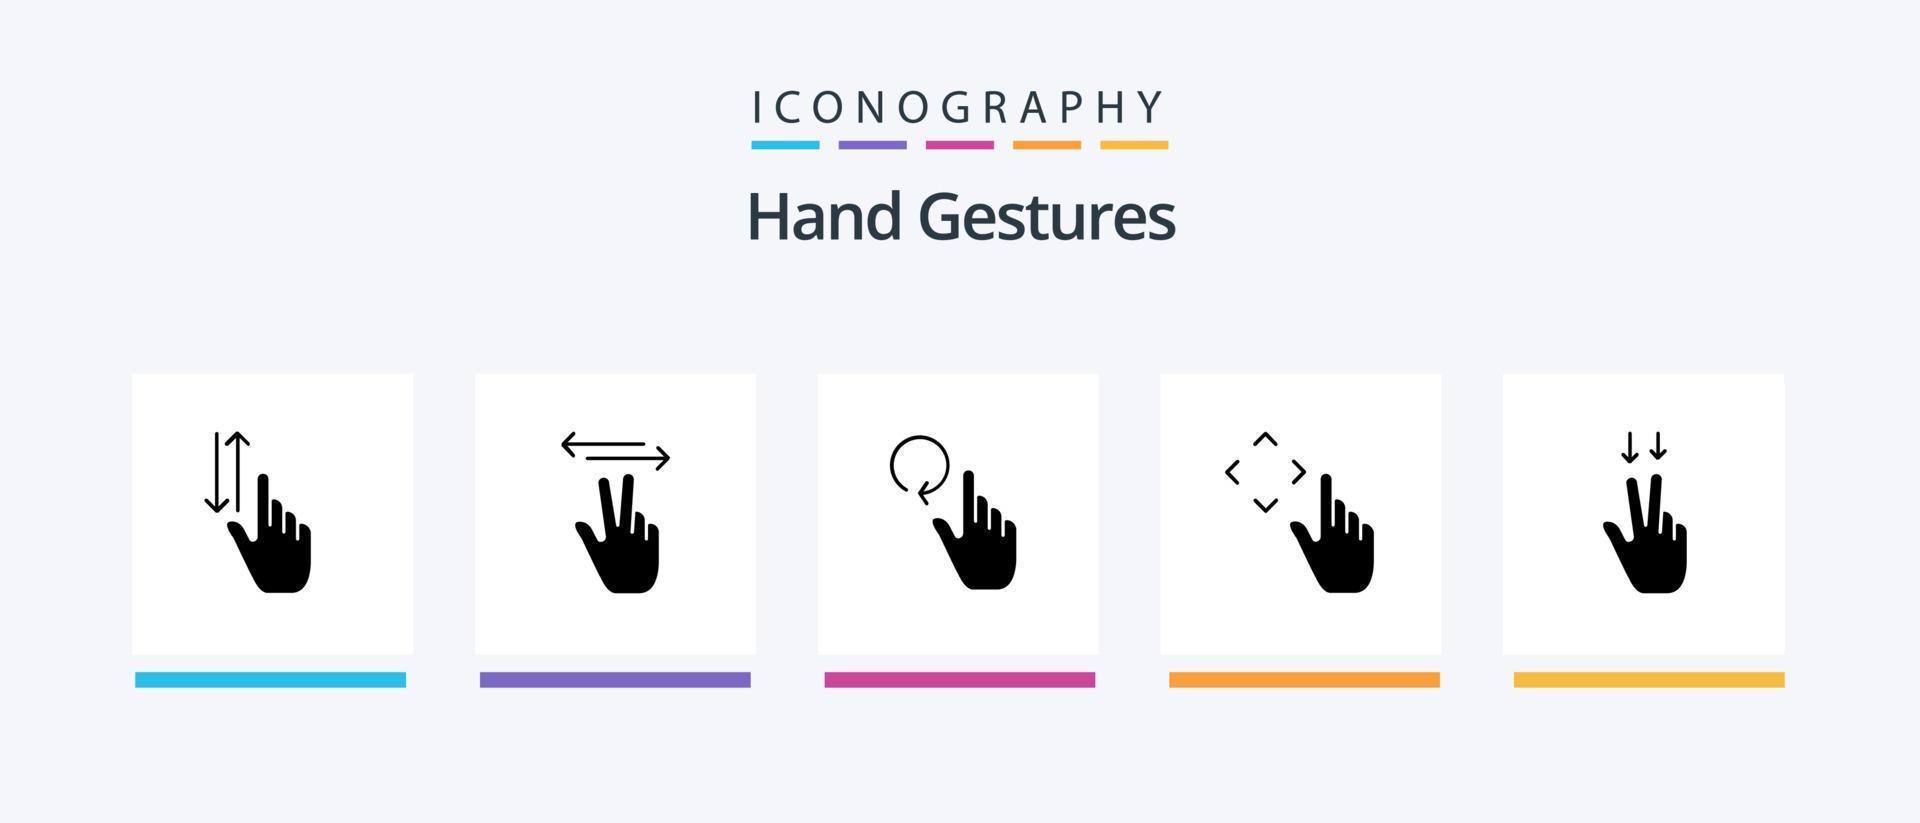 Paquete de iconos de glifo 5 de gestos con las manos, incluidos los dedos. gestos tocar. arriba. recargar. diseño de iconos creativos vector